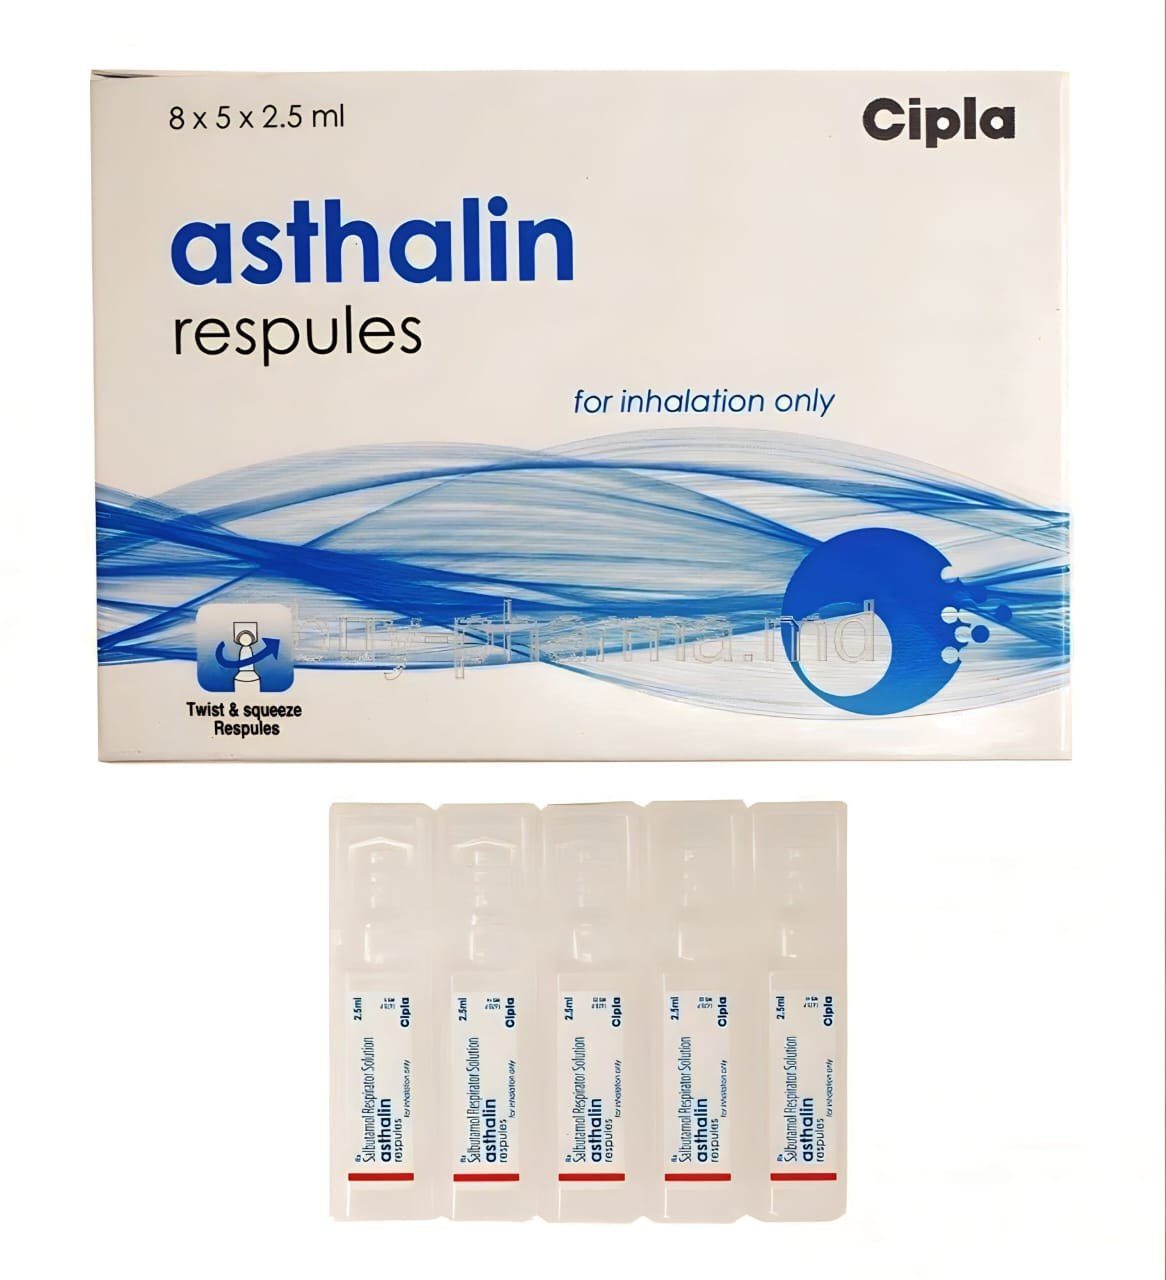 asthalin-respules